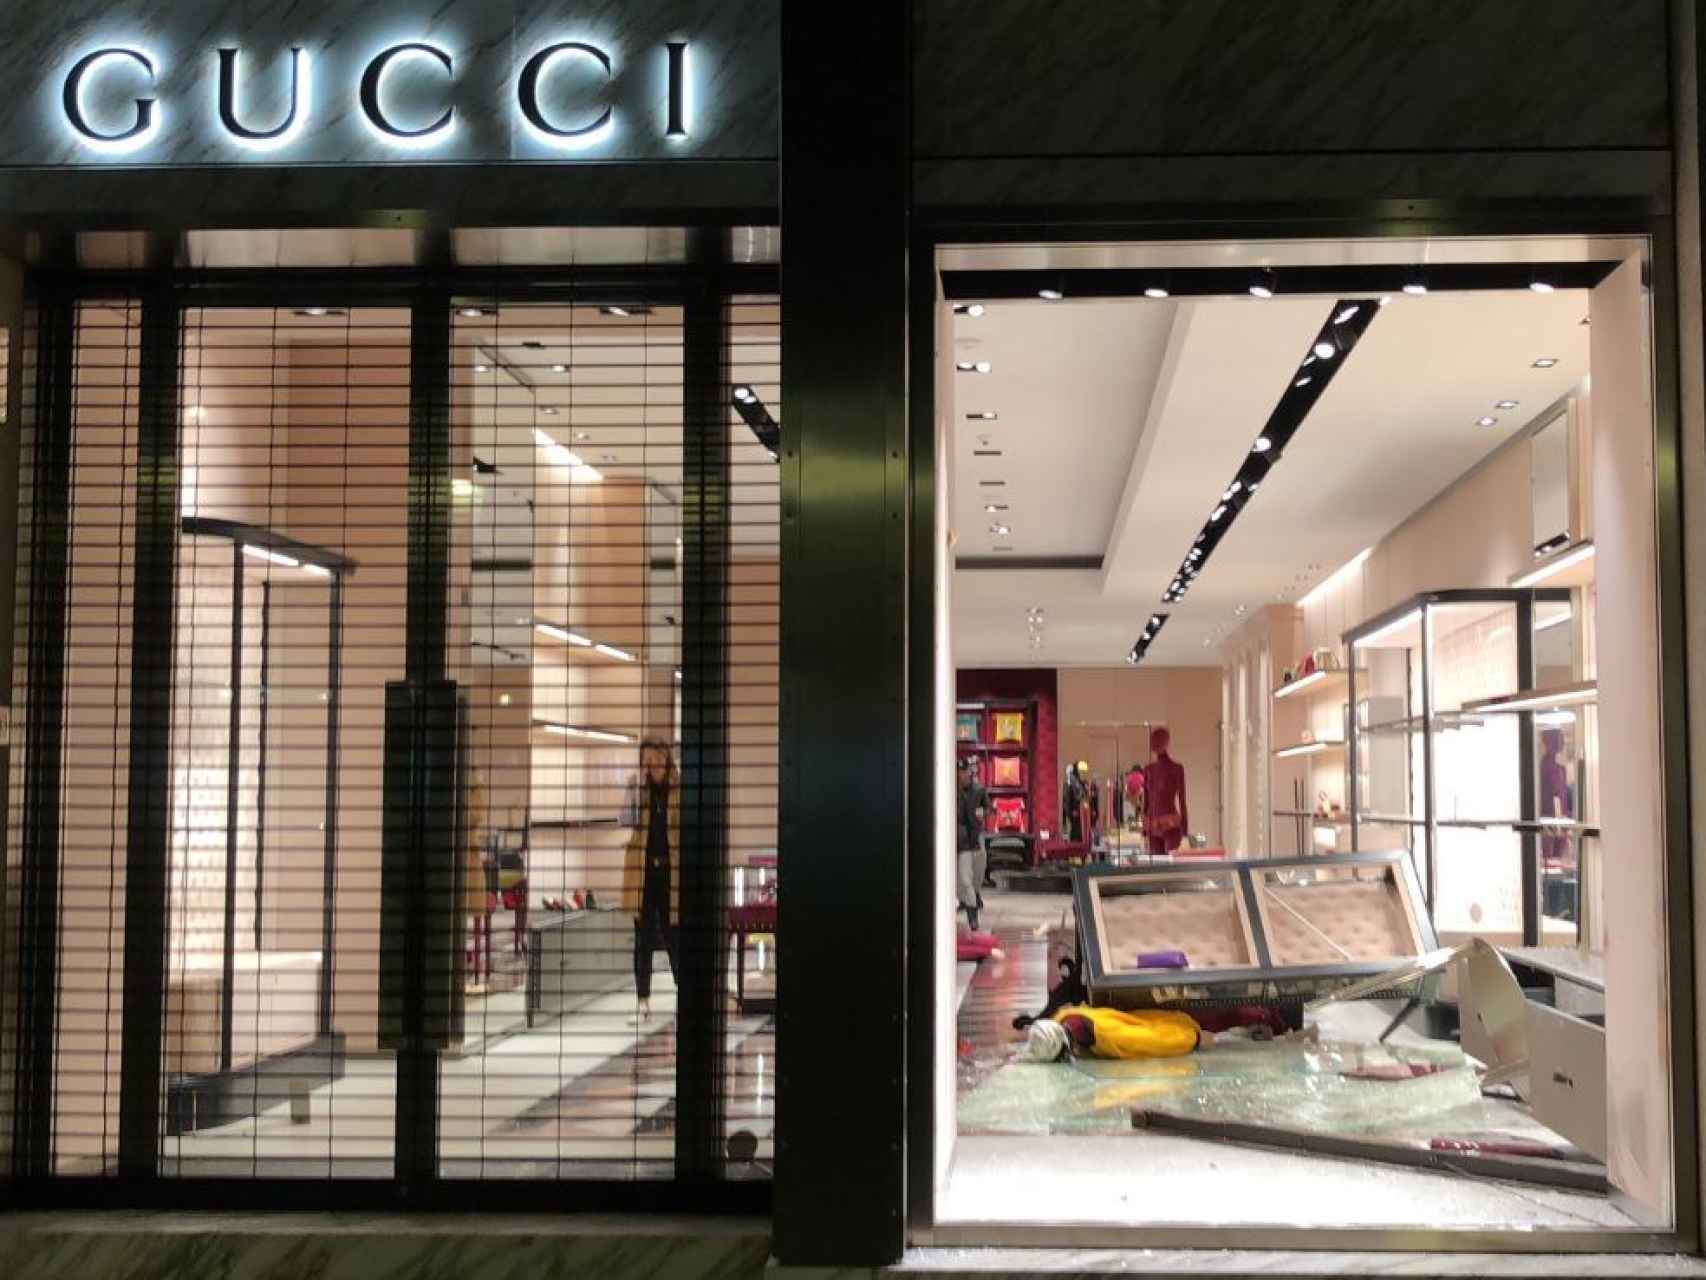 Espectacular alunizaje nocturno contra la tienda de Gucci de Barcelona